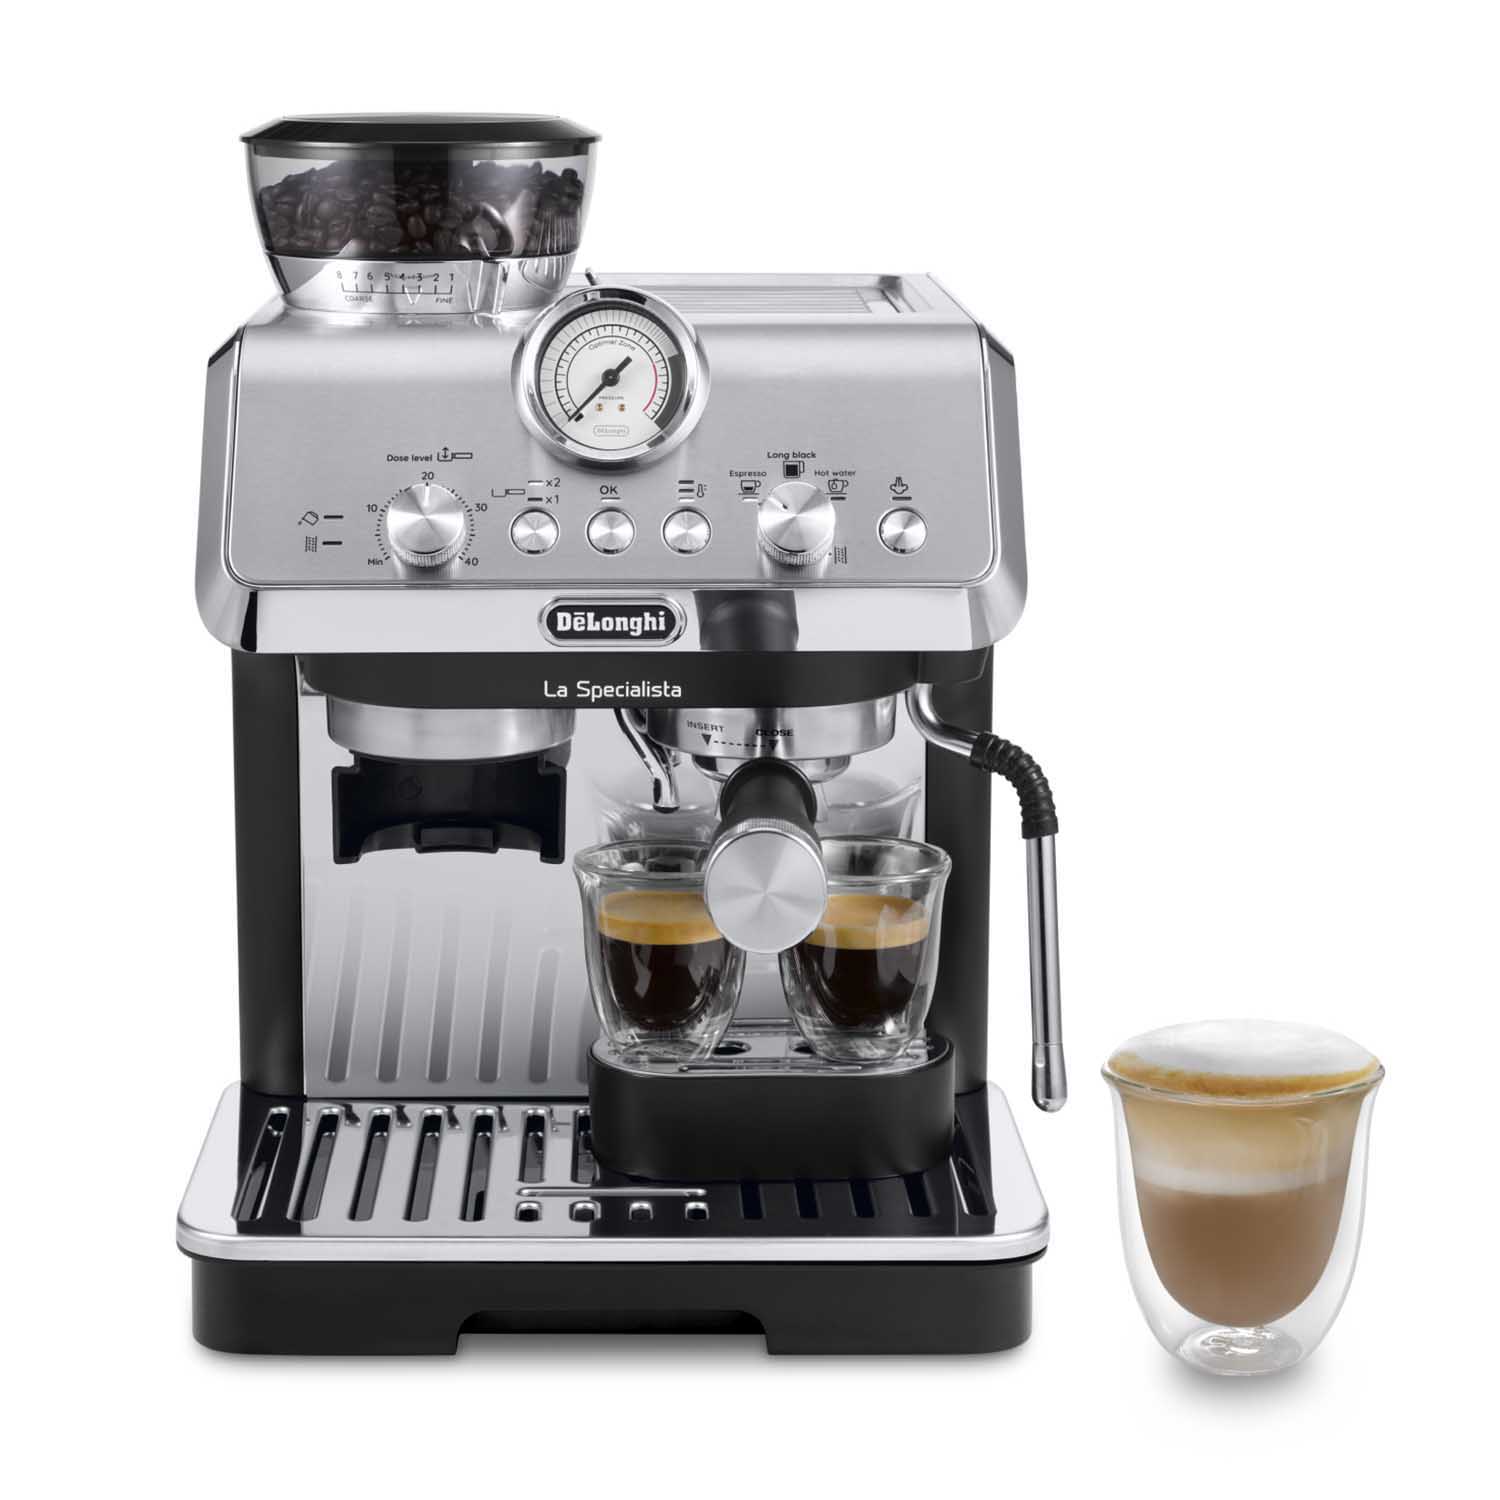 M/CAFFE' ESPRESSO DE LONGHI La Specialista EC9155.MB, 1400 W, Dark grey